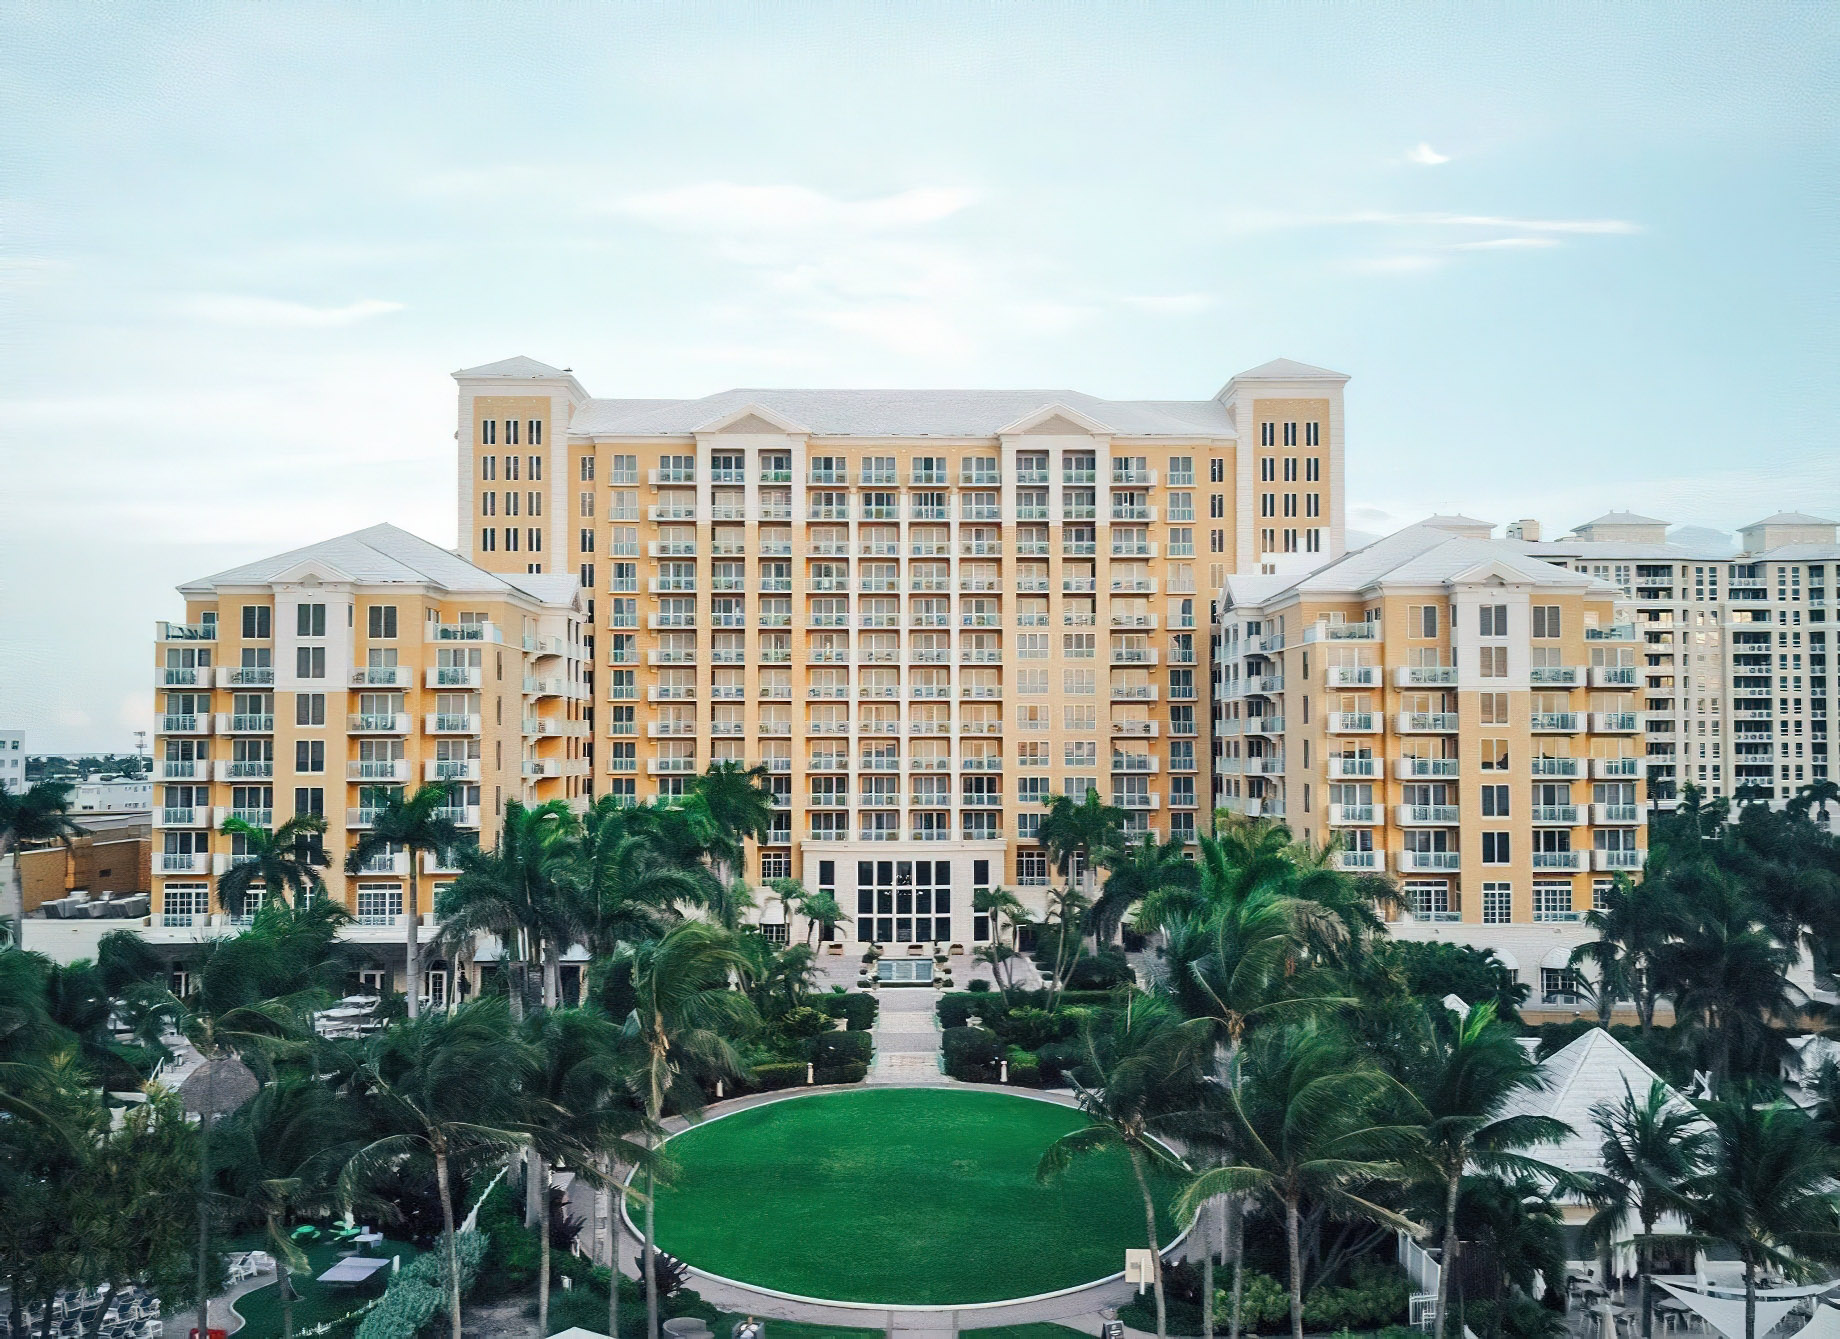 The Ritz-Carlton Key Biscayne, Miami Hotel - Miami, FL, USA - Exterior Aerial Property View